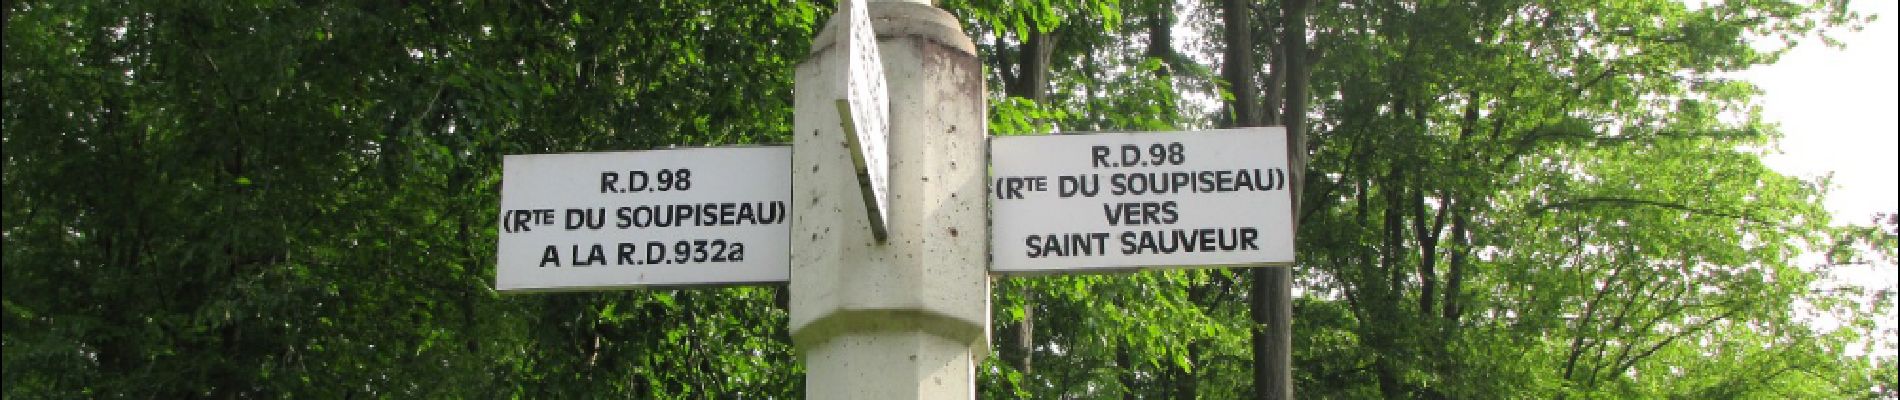 Point of interest Saint-Sauveur - Point 15 - Photo